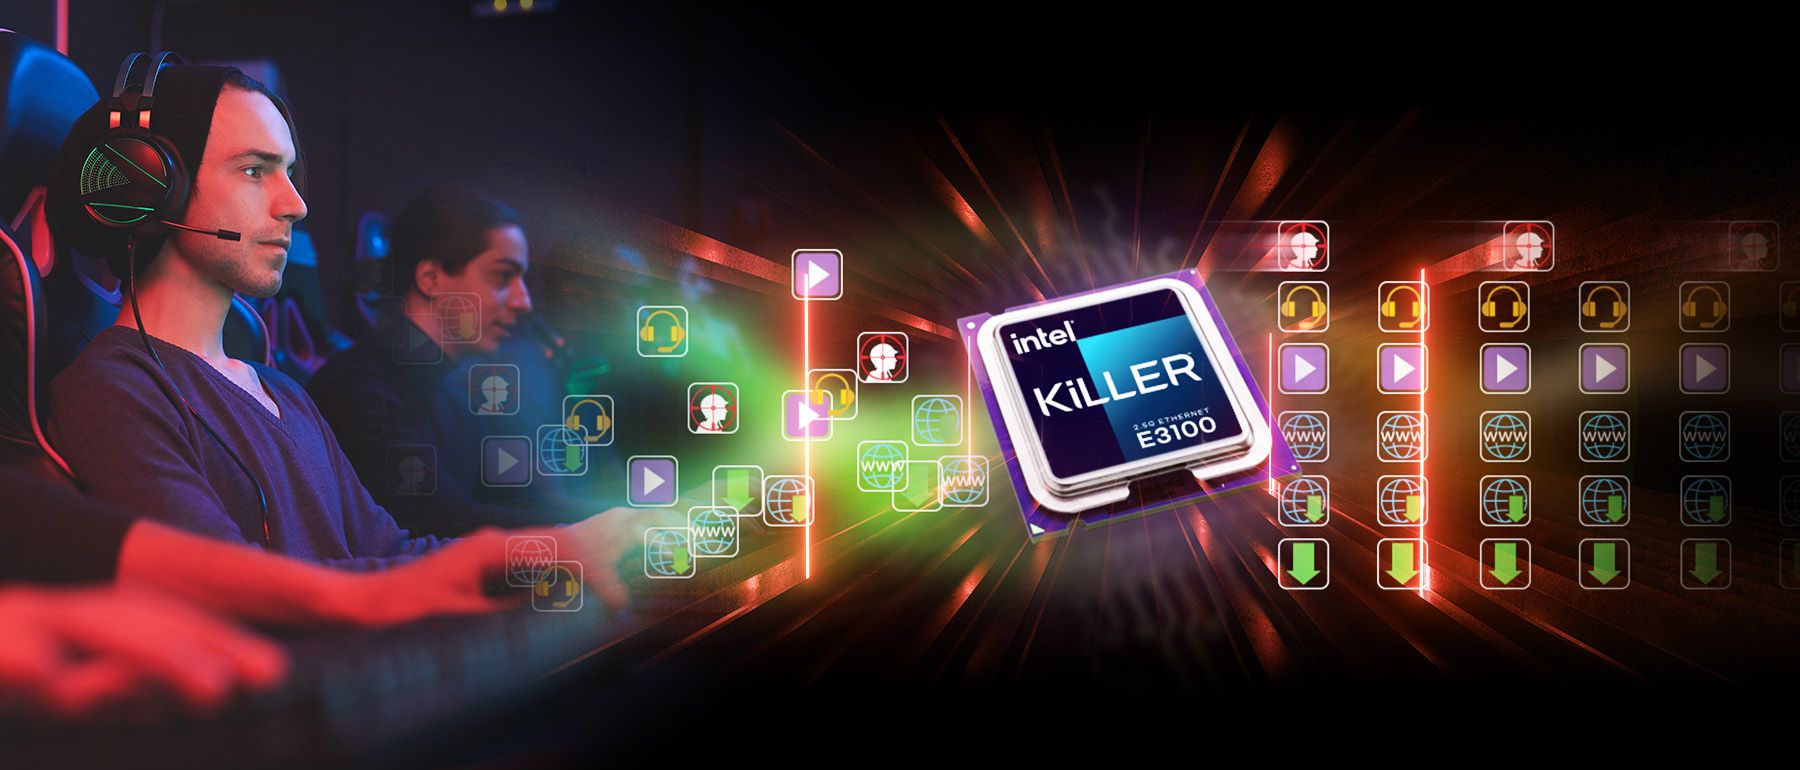 Killer™ Ethernet E3100